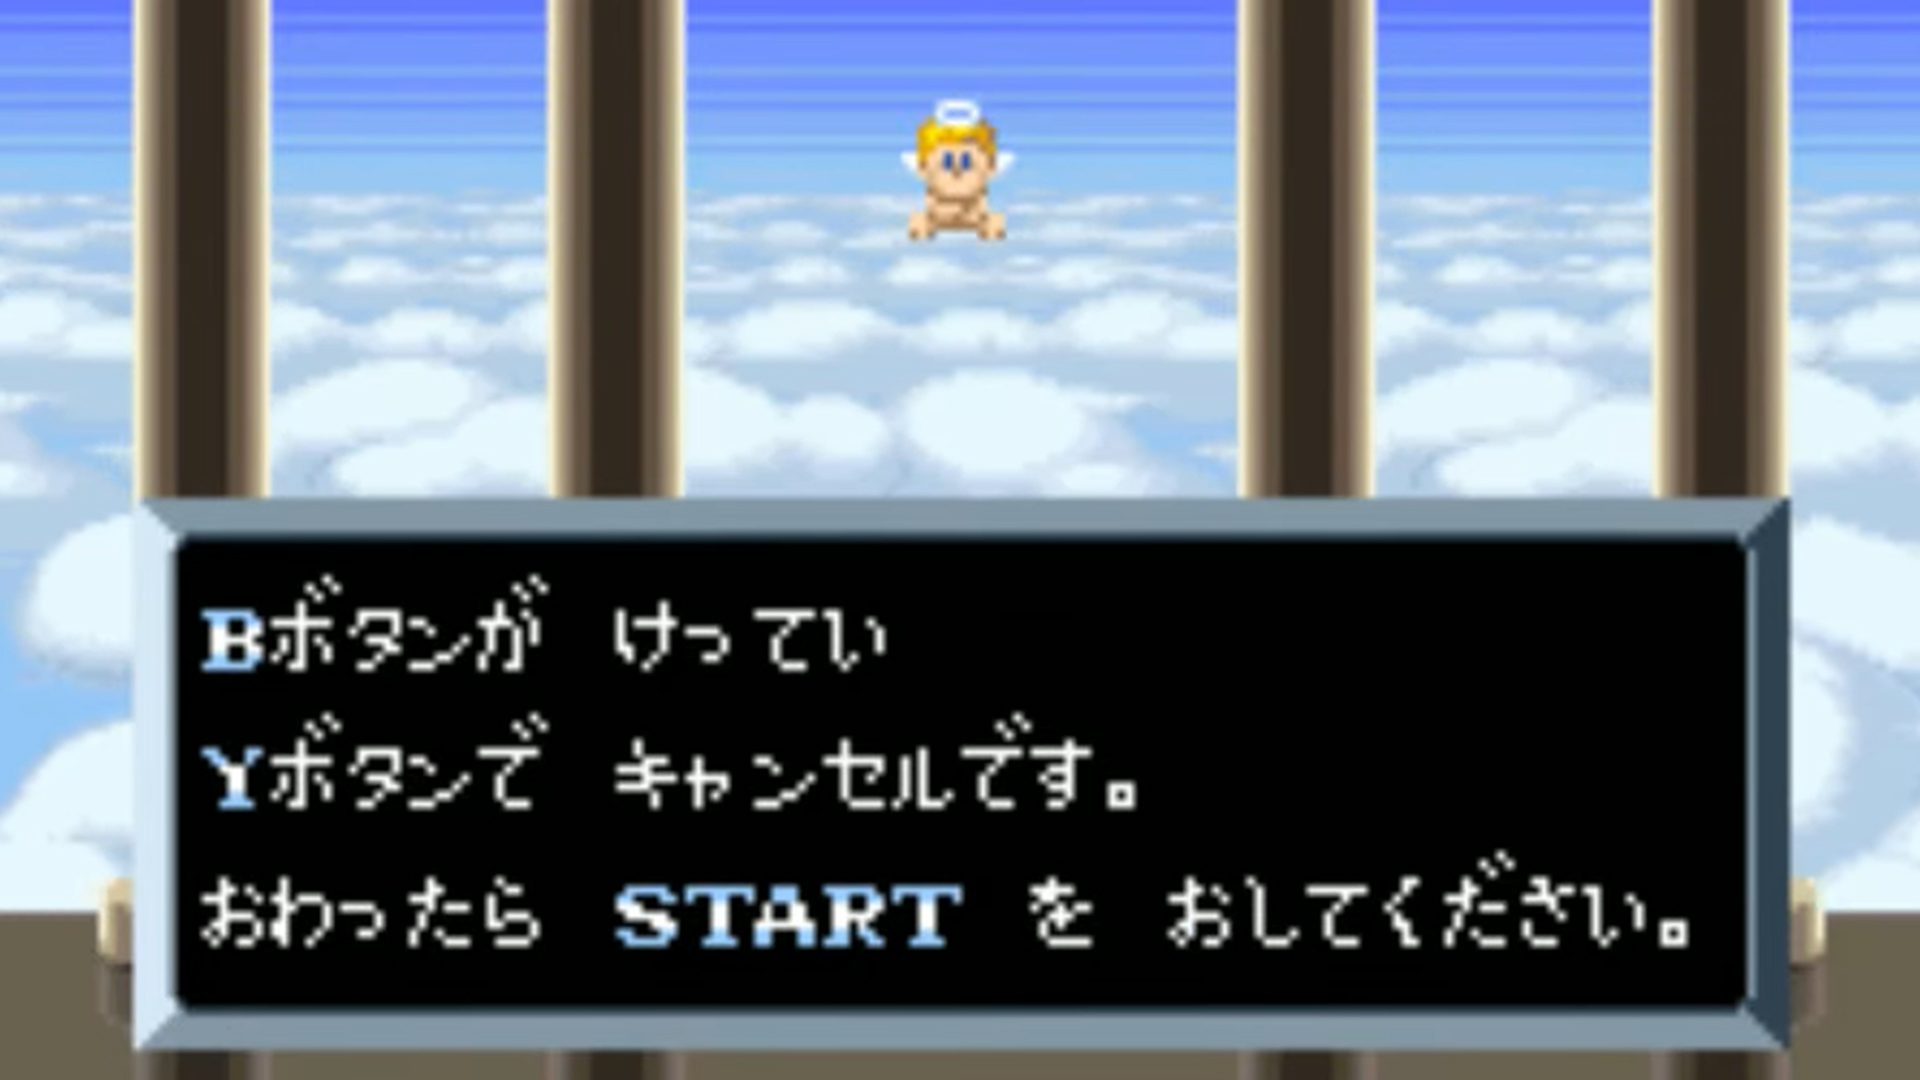 RetroArch-emulatorplattformen översätter nu automatiskt japanska spel till engelska